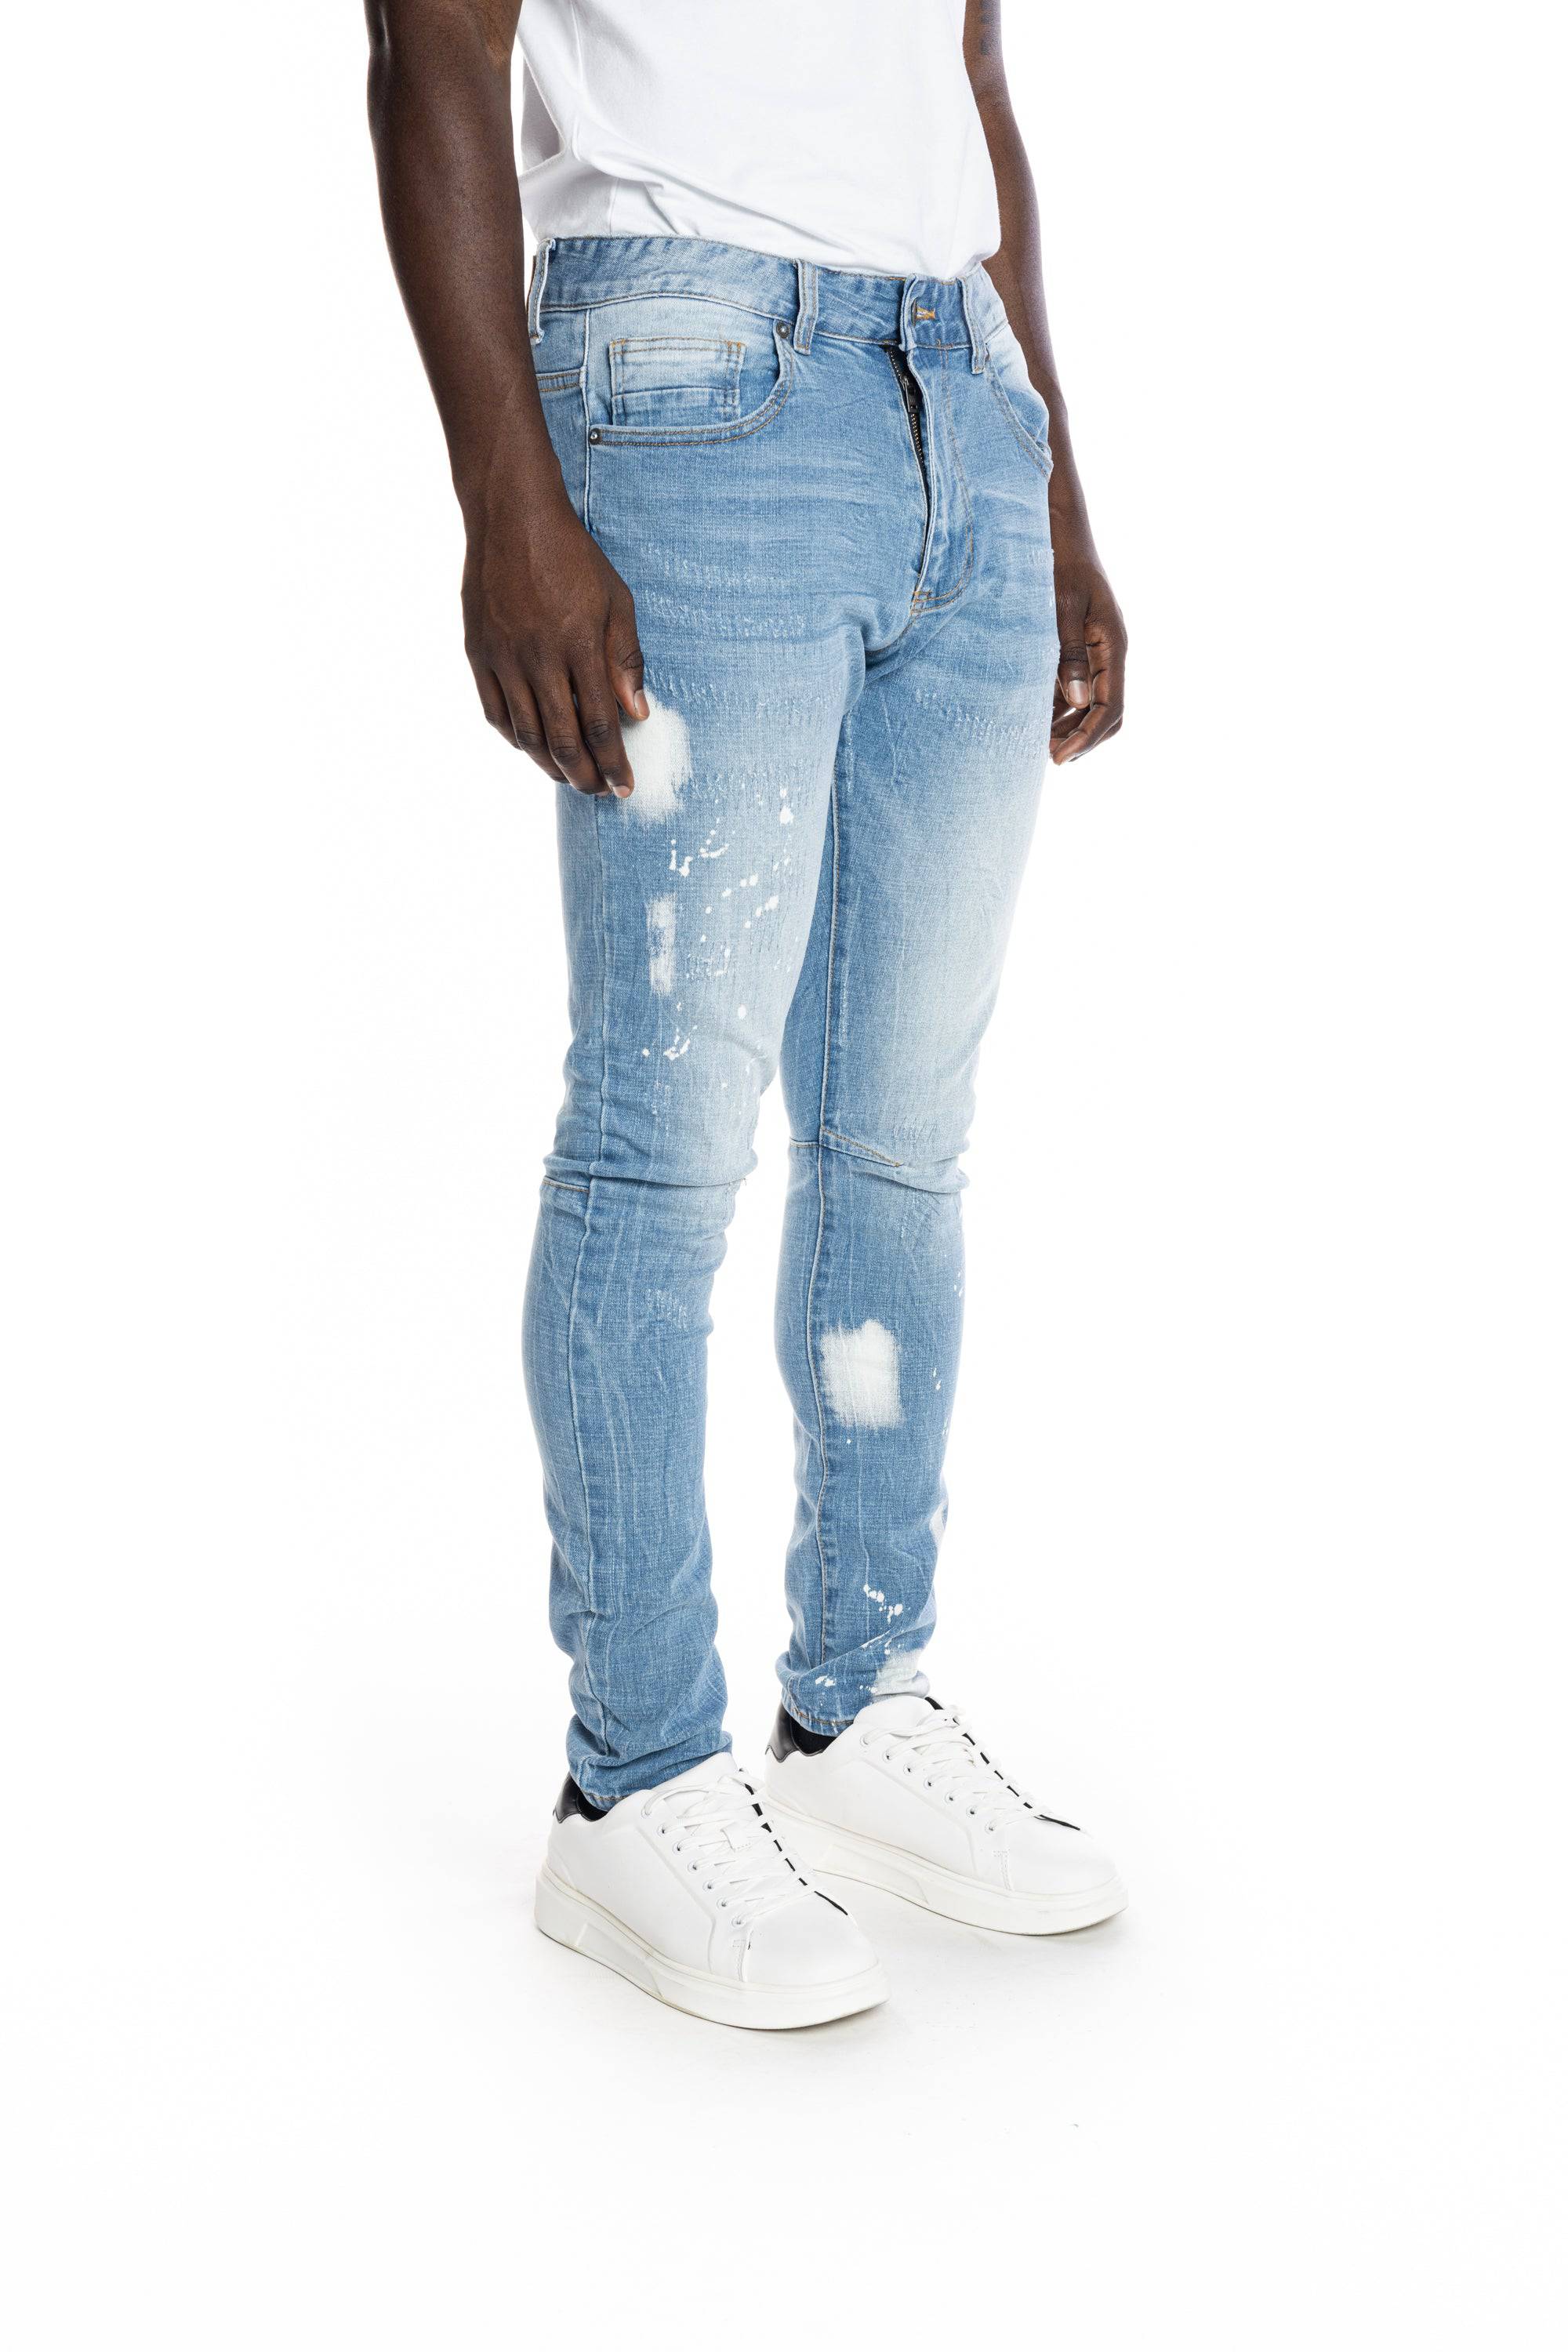 Plain blue jeans - RB Designs